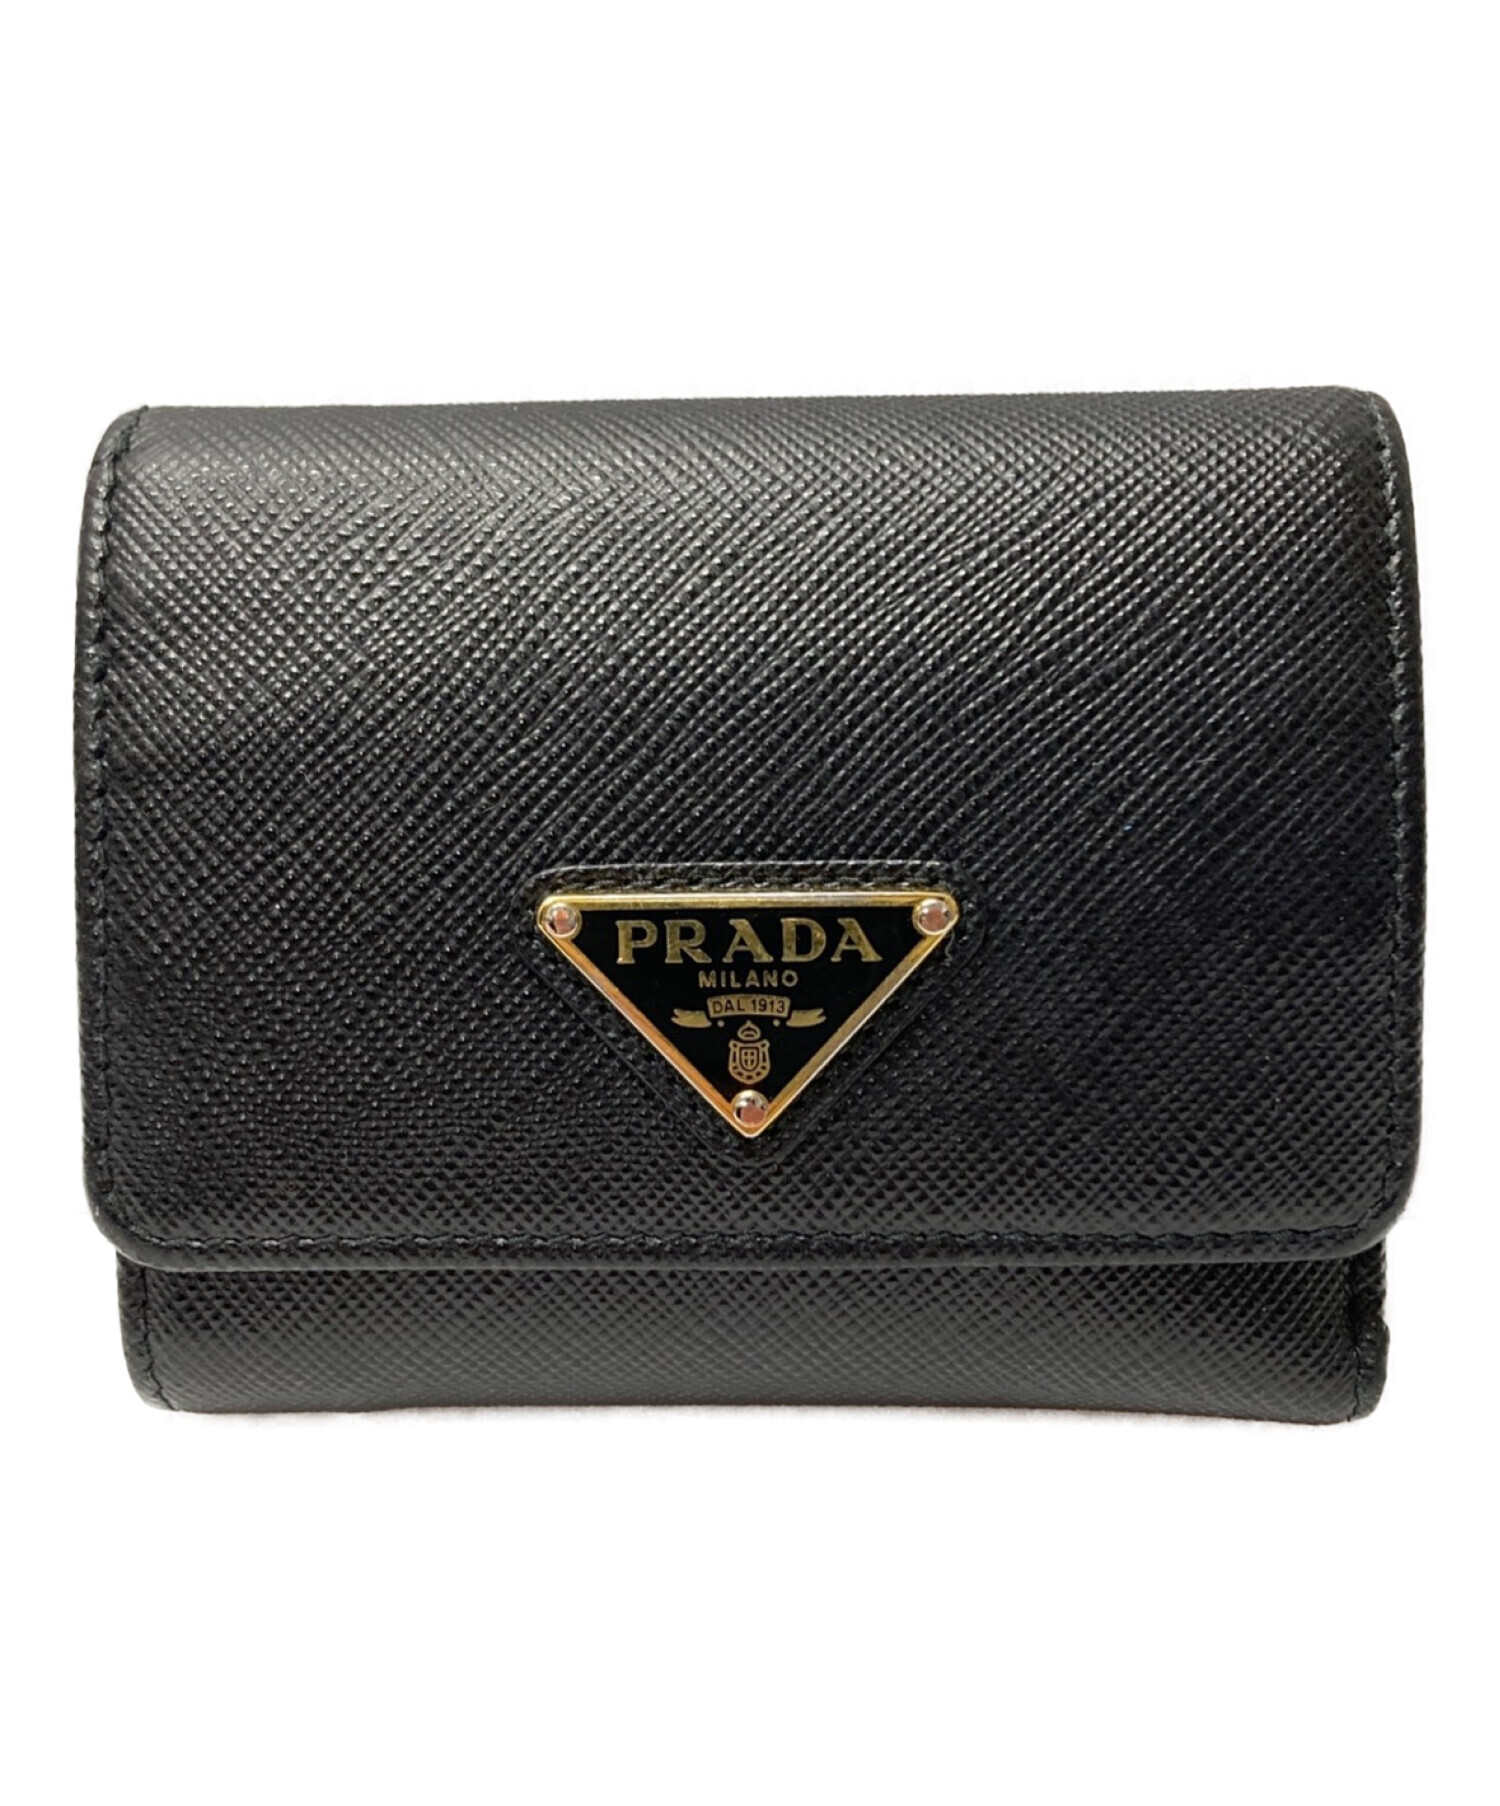 スナップボタン新品 PRADA プラダ 三つ折り財布 サフィアーノ ブラック 三角プレート 黒